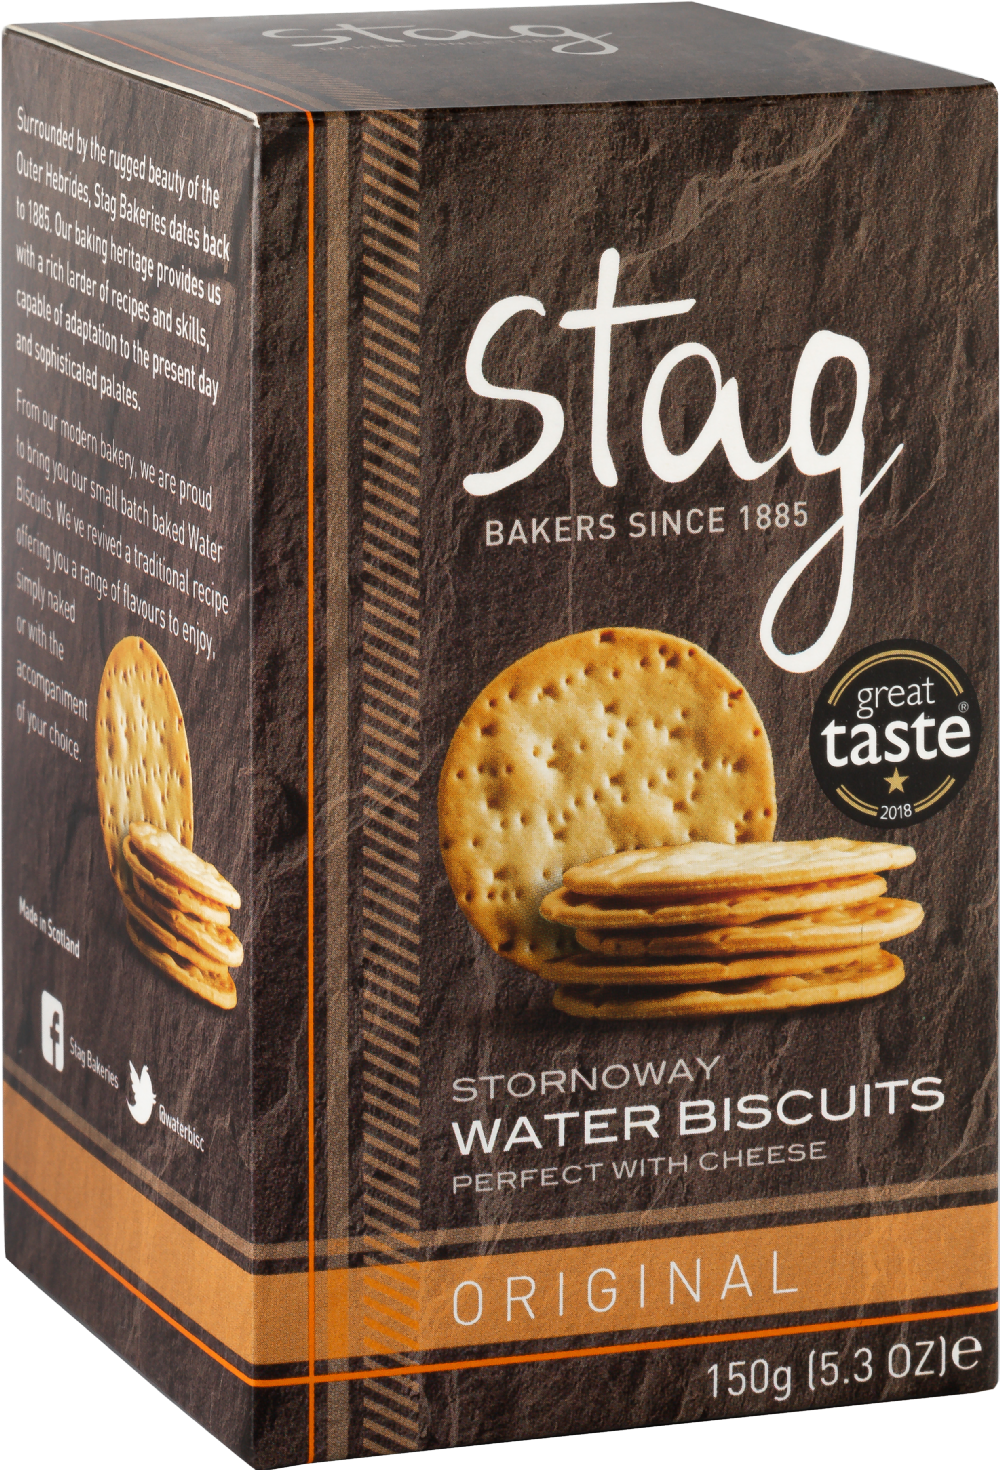 STAG Stornoway Water Biscuits - Original 150g